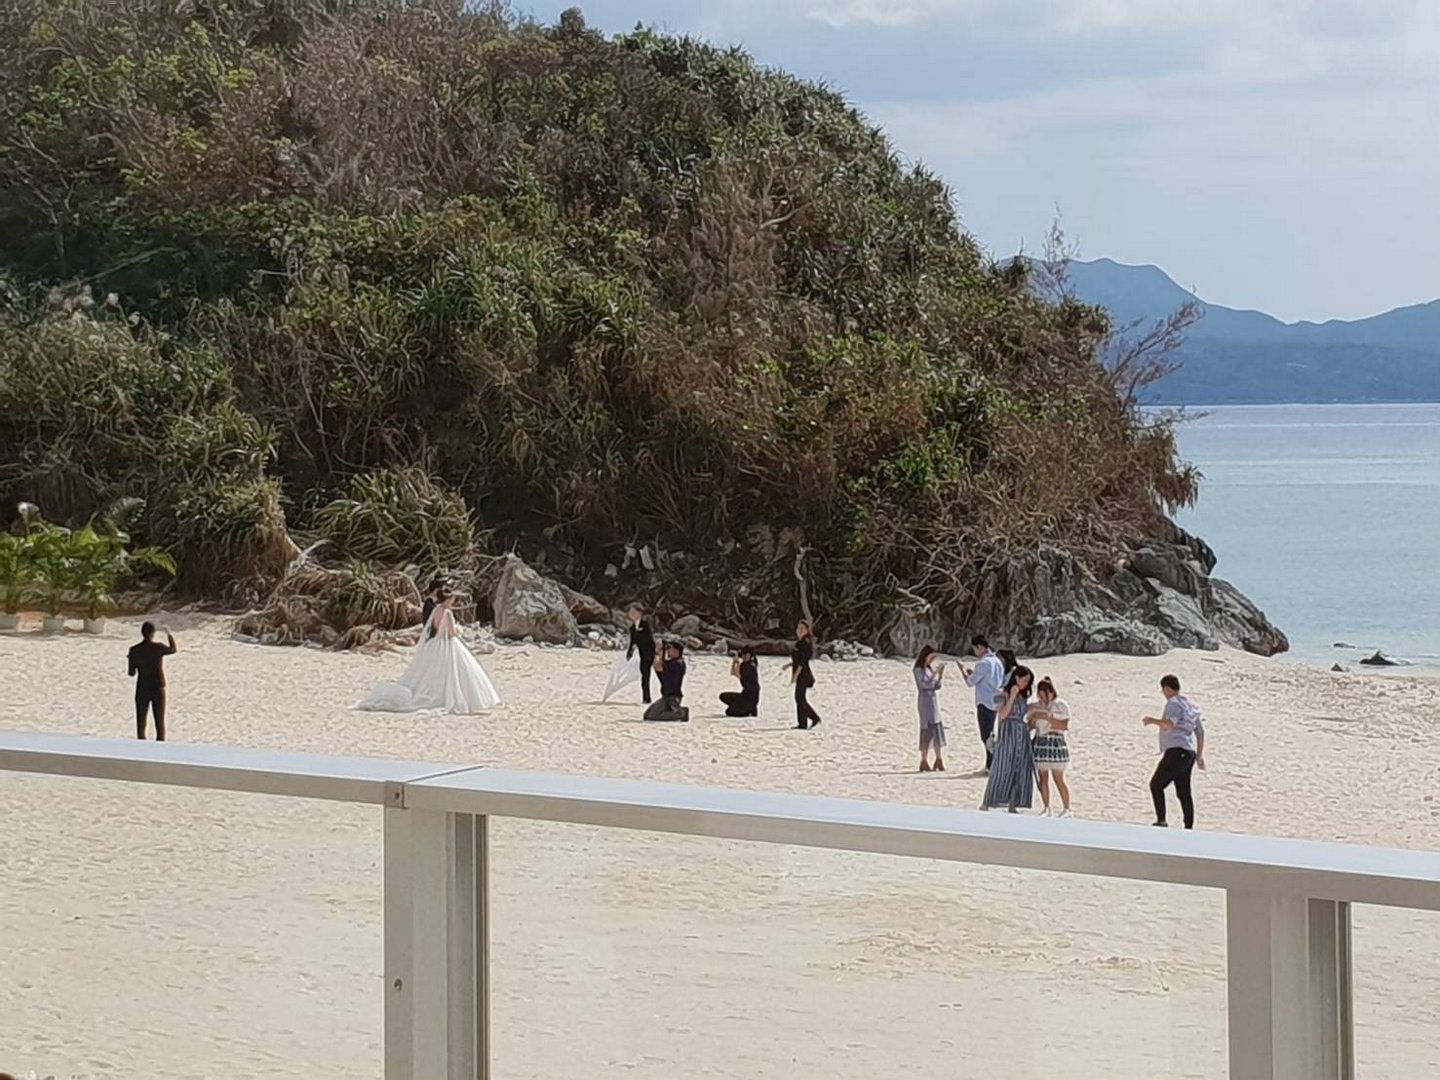 沖繩婚禮造型服務 很美很特別超夢幻 同場加映北海道婚紗